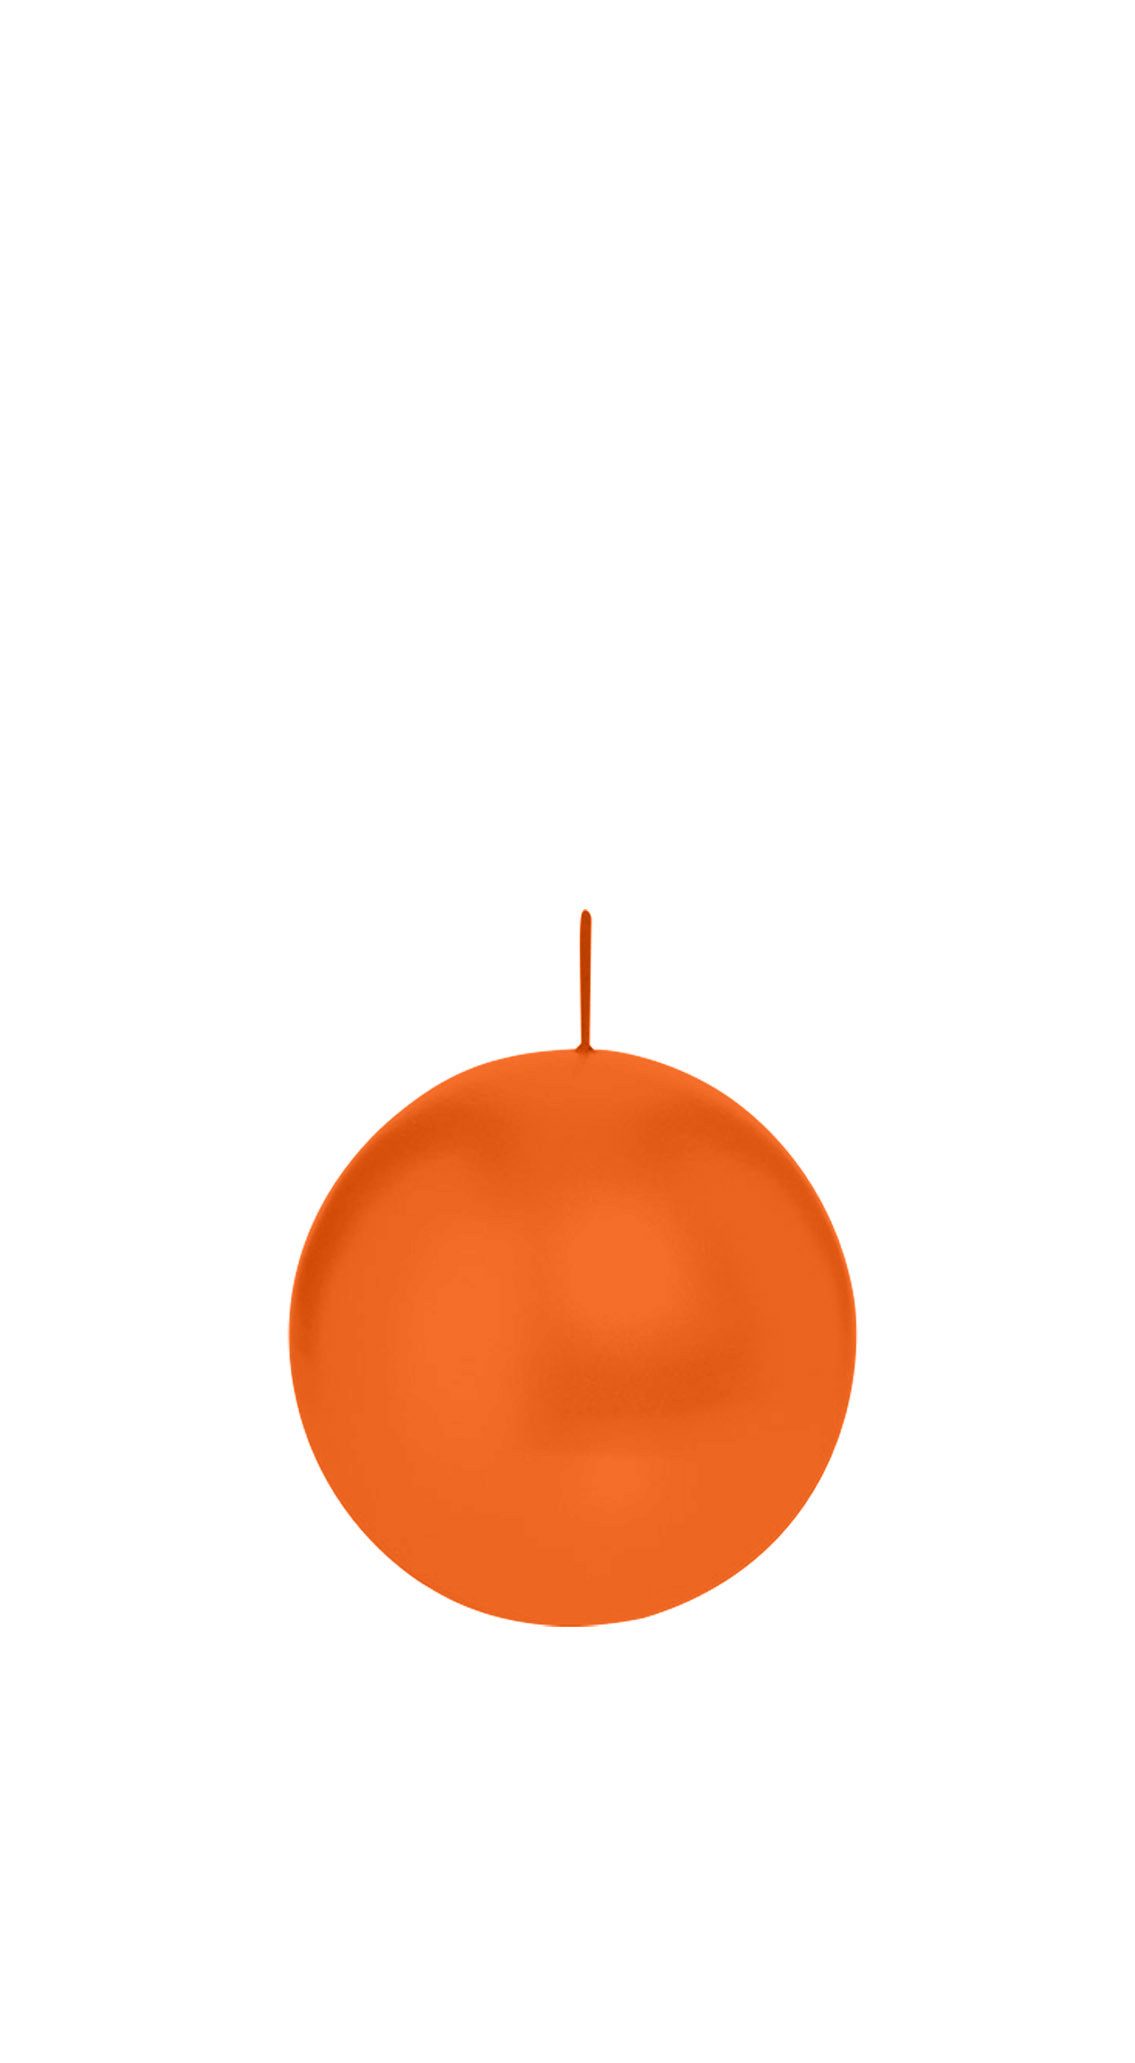 Wiedemann Kerzen Adventskerze Kugelkerzen Aprikose Orange